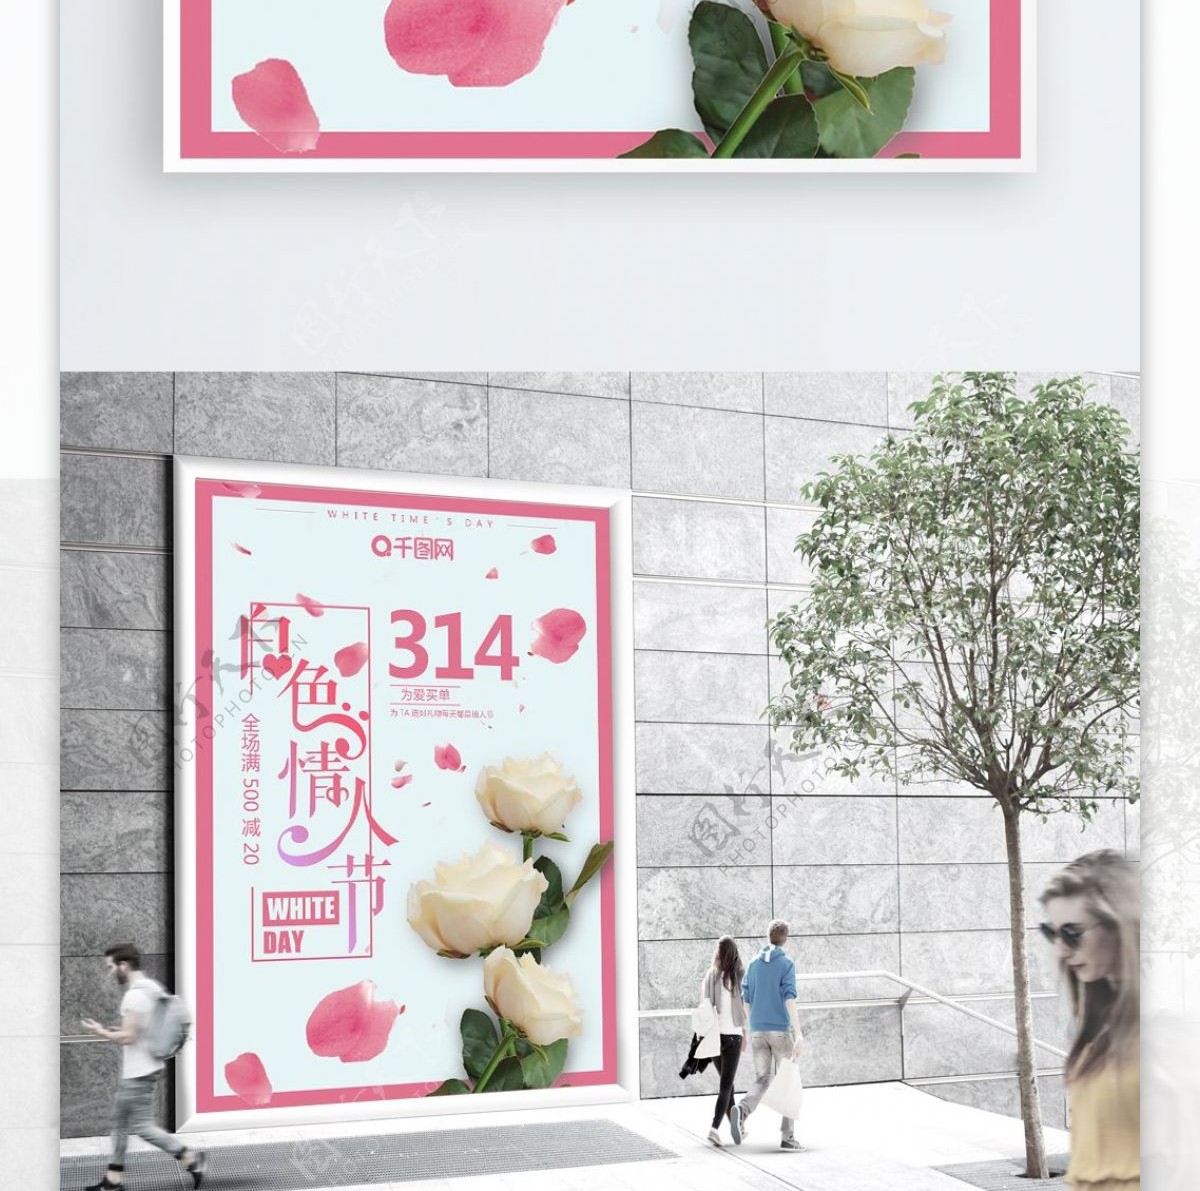 粉色唯美浪漫314白色情人节促销宣传海报